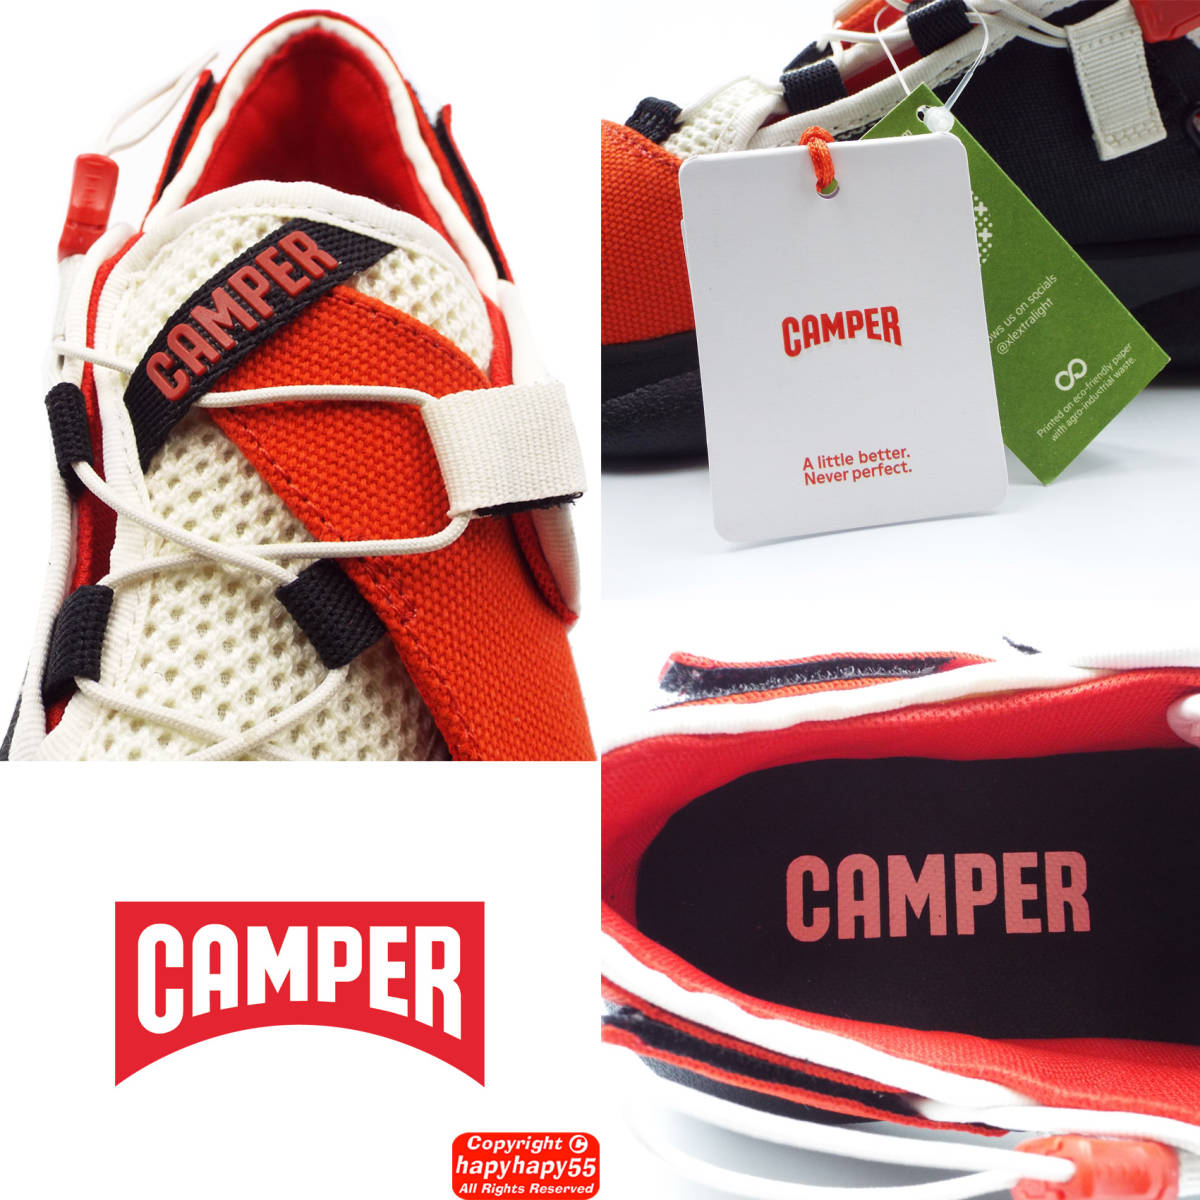  не использовался #CAMPER KARST спортивные туфли 2022SS обычная цена 2.5 десять тысяч * semi открытый спортивные туфли подвеска tenabru уличный Camper машина -тактный dado легкий 